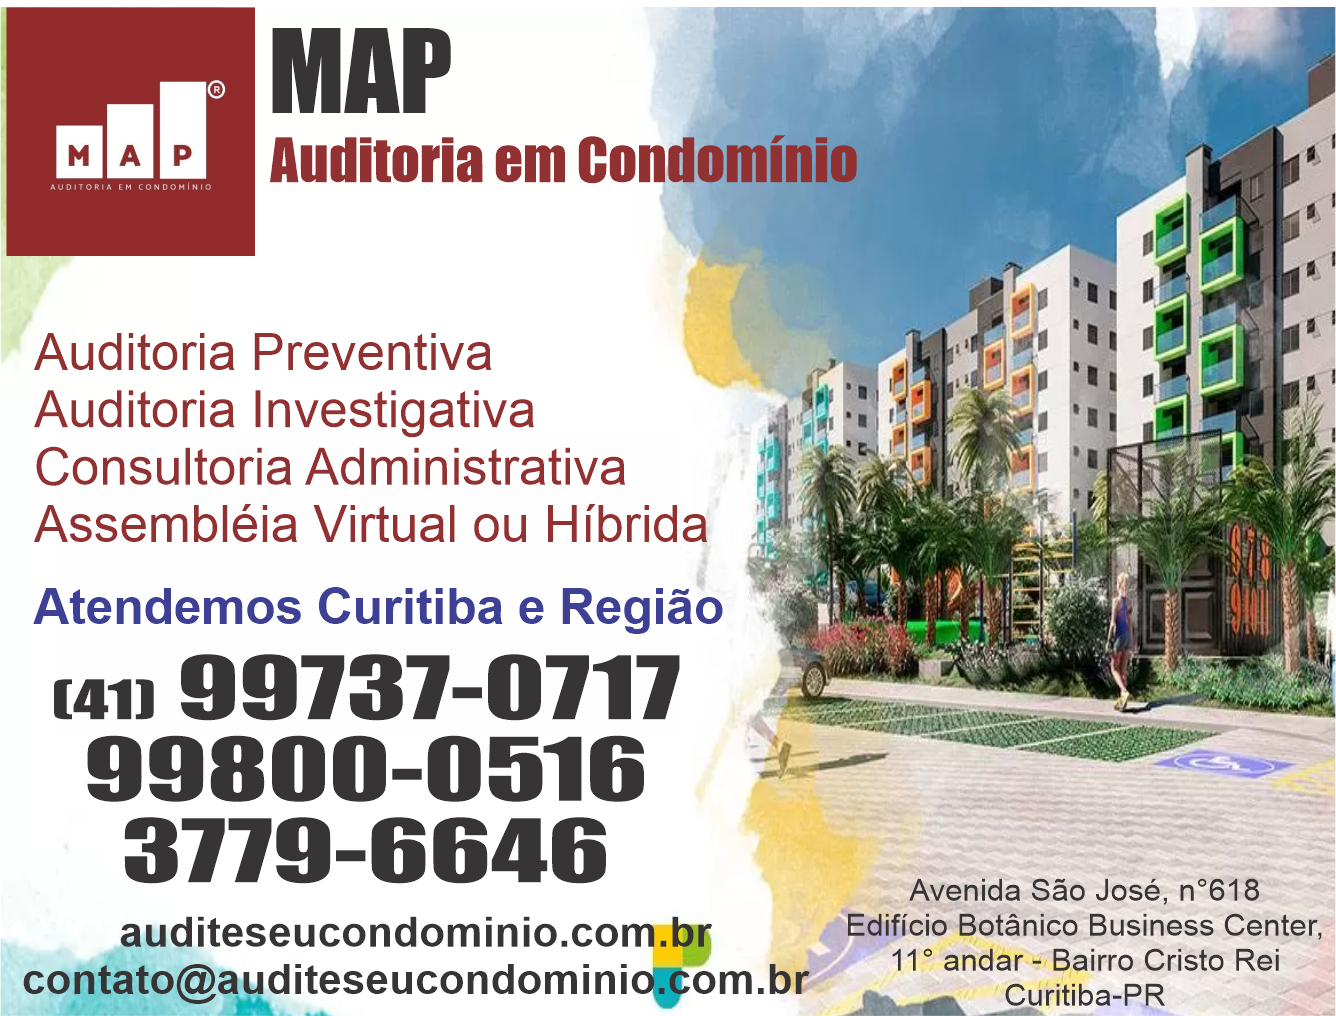 MAP Auditoria em Condomínio      AVENIDA SÃO JOSÉ, 618, CURITIBA - PR  Fones: (41)99800-0516 / (41) 3779-6646